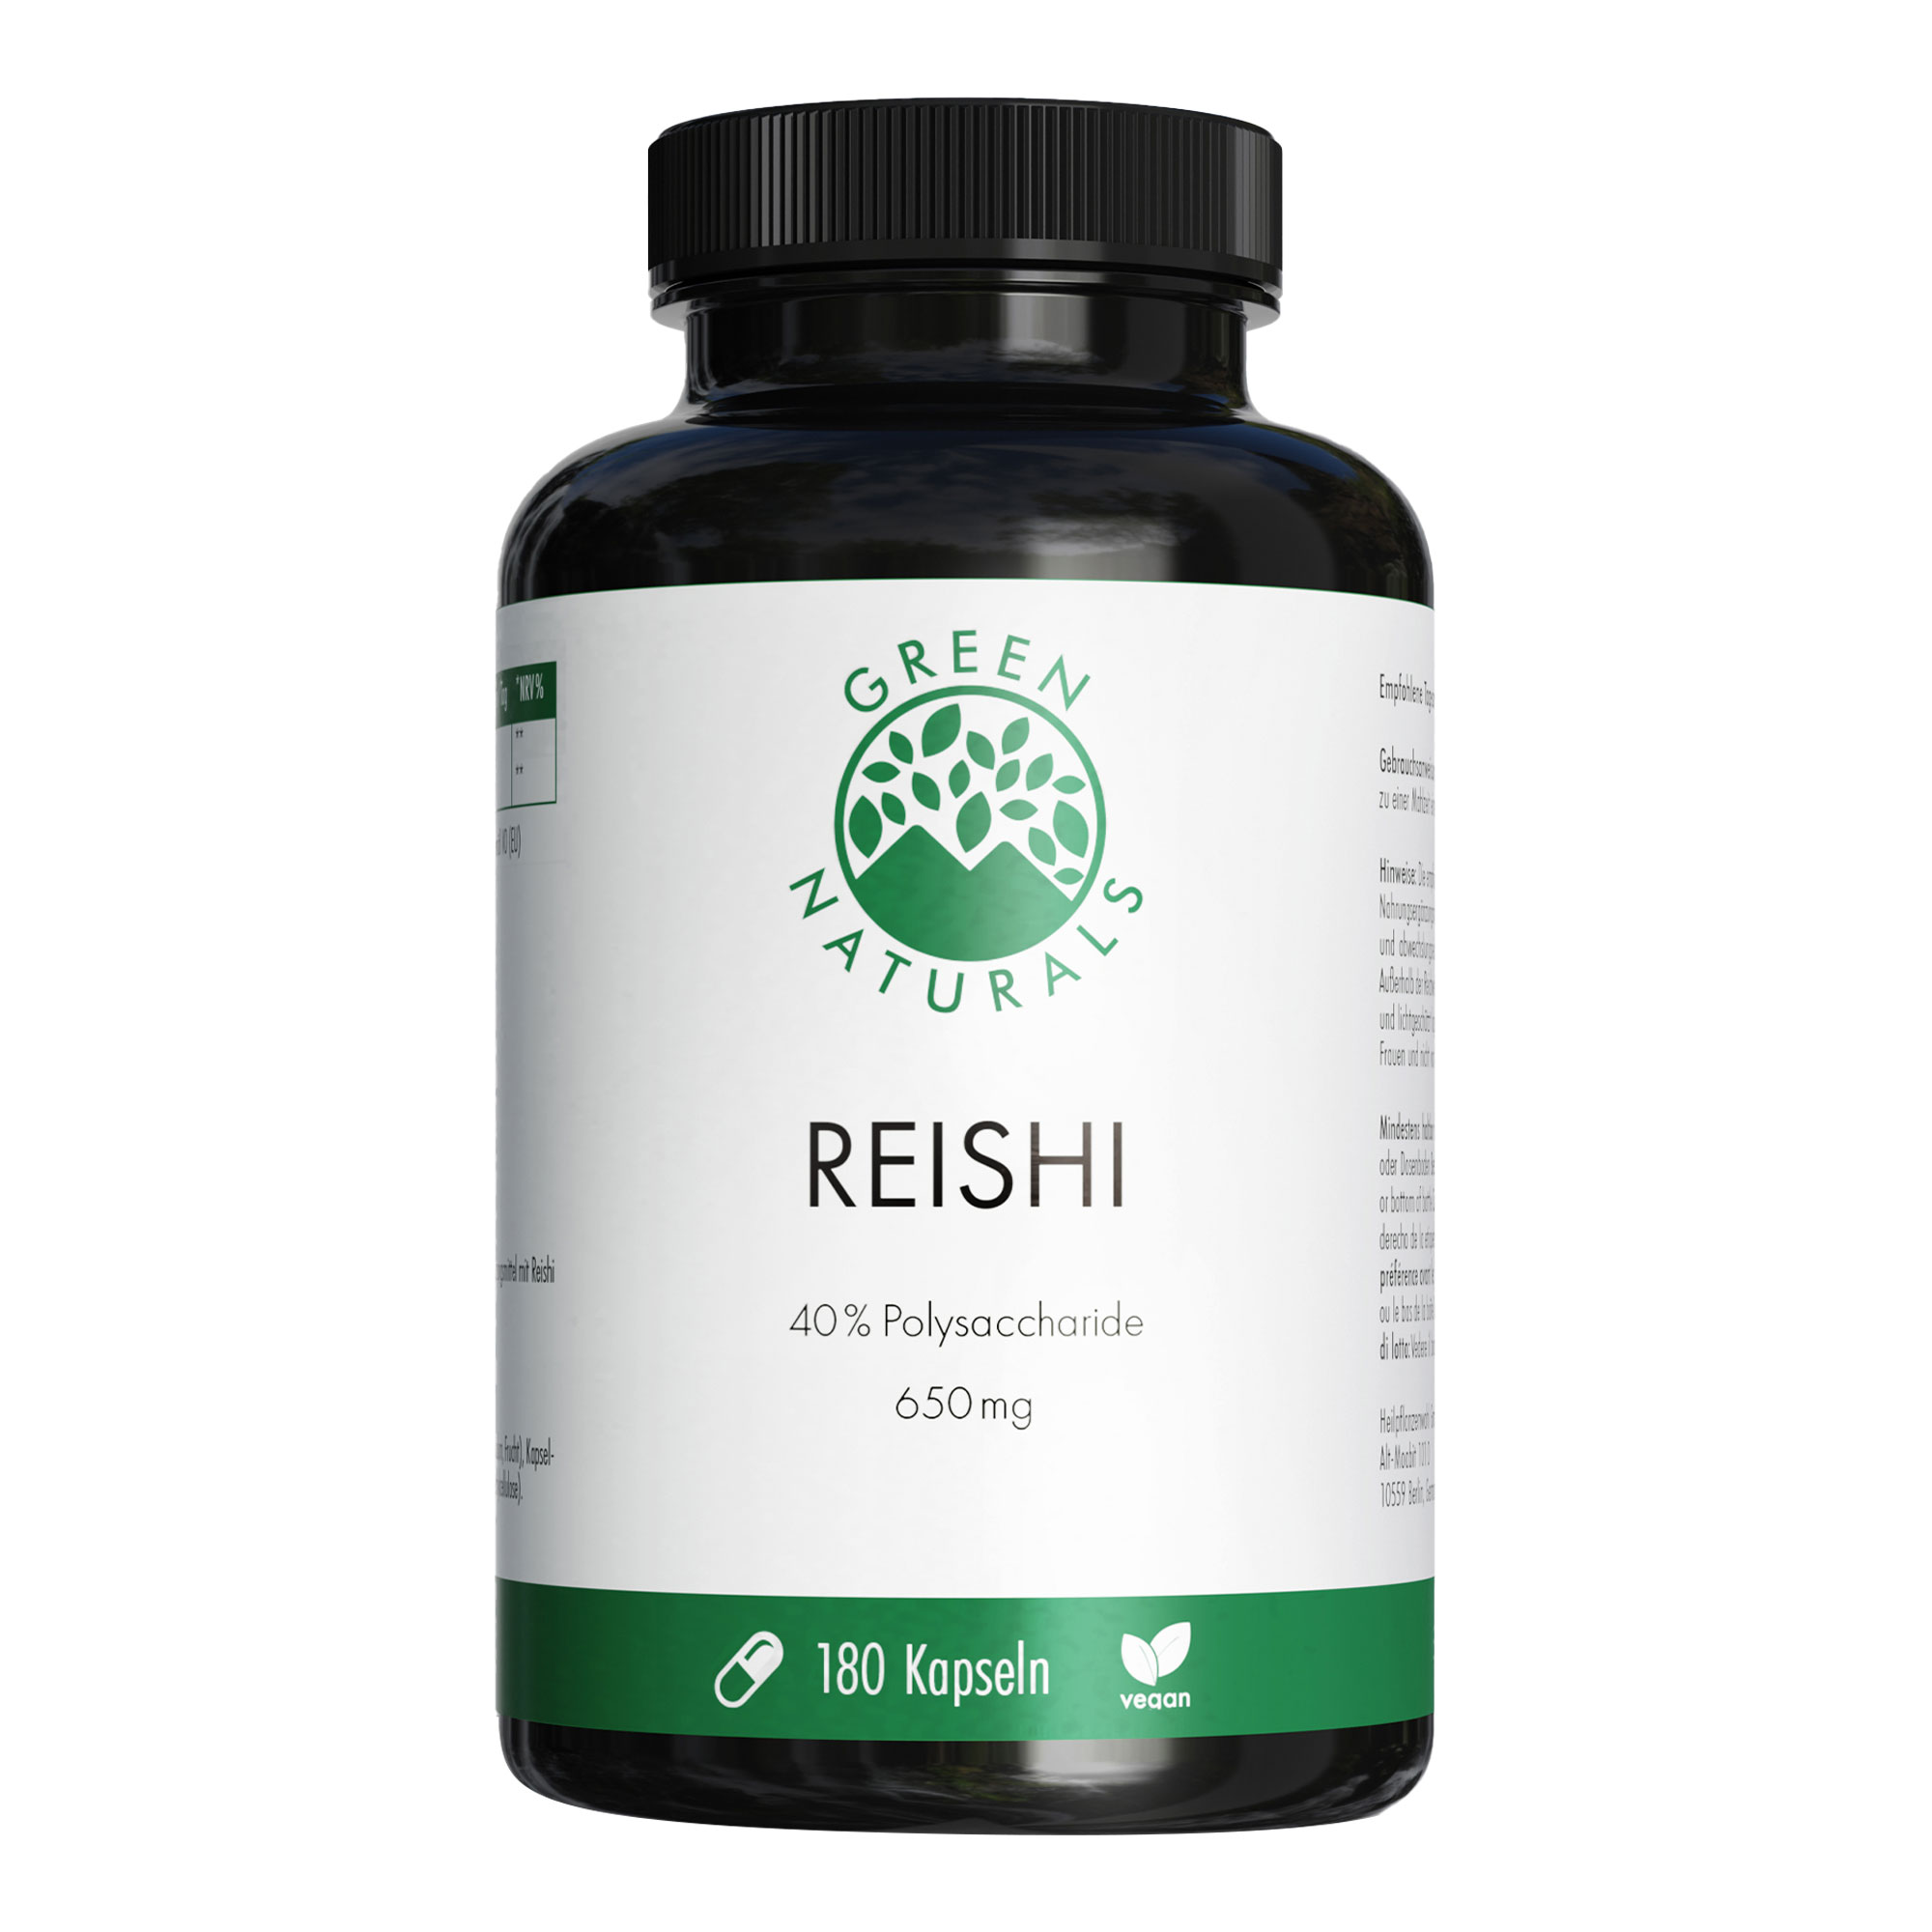 Nahrungsergänzungsmittel mit hochdosiertem Reishi-Extrakt. 3-Monatsvorrat.